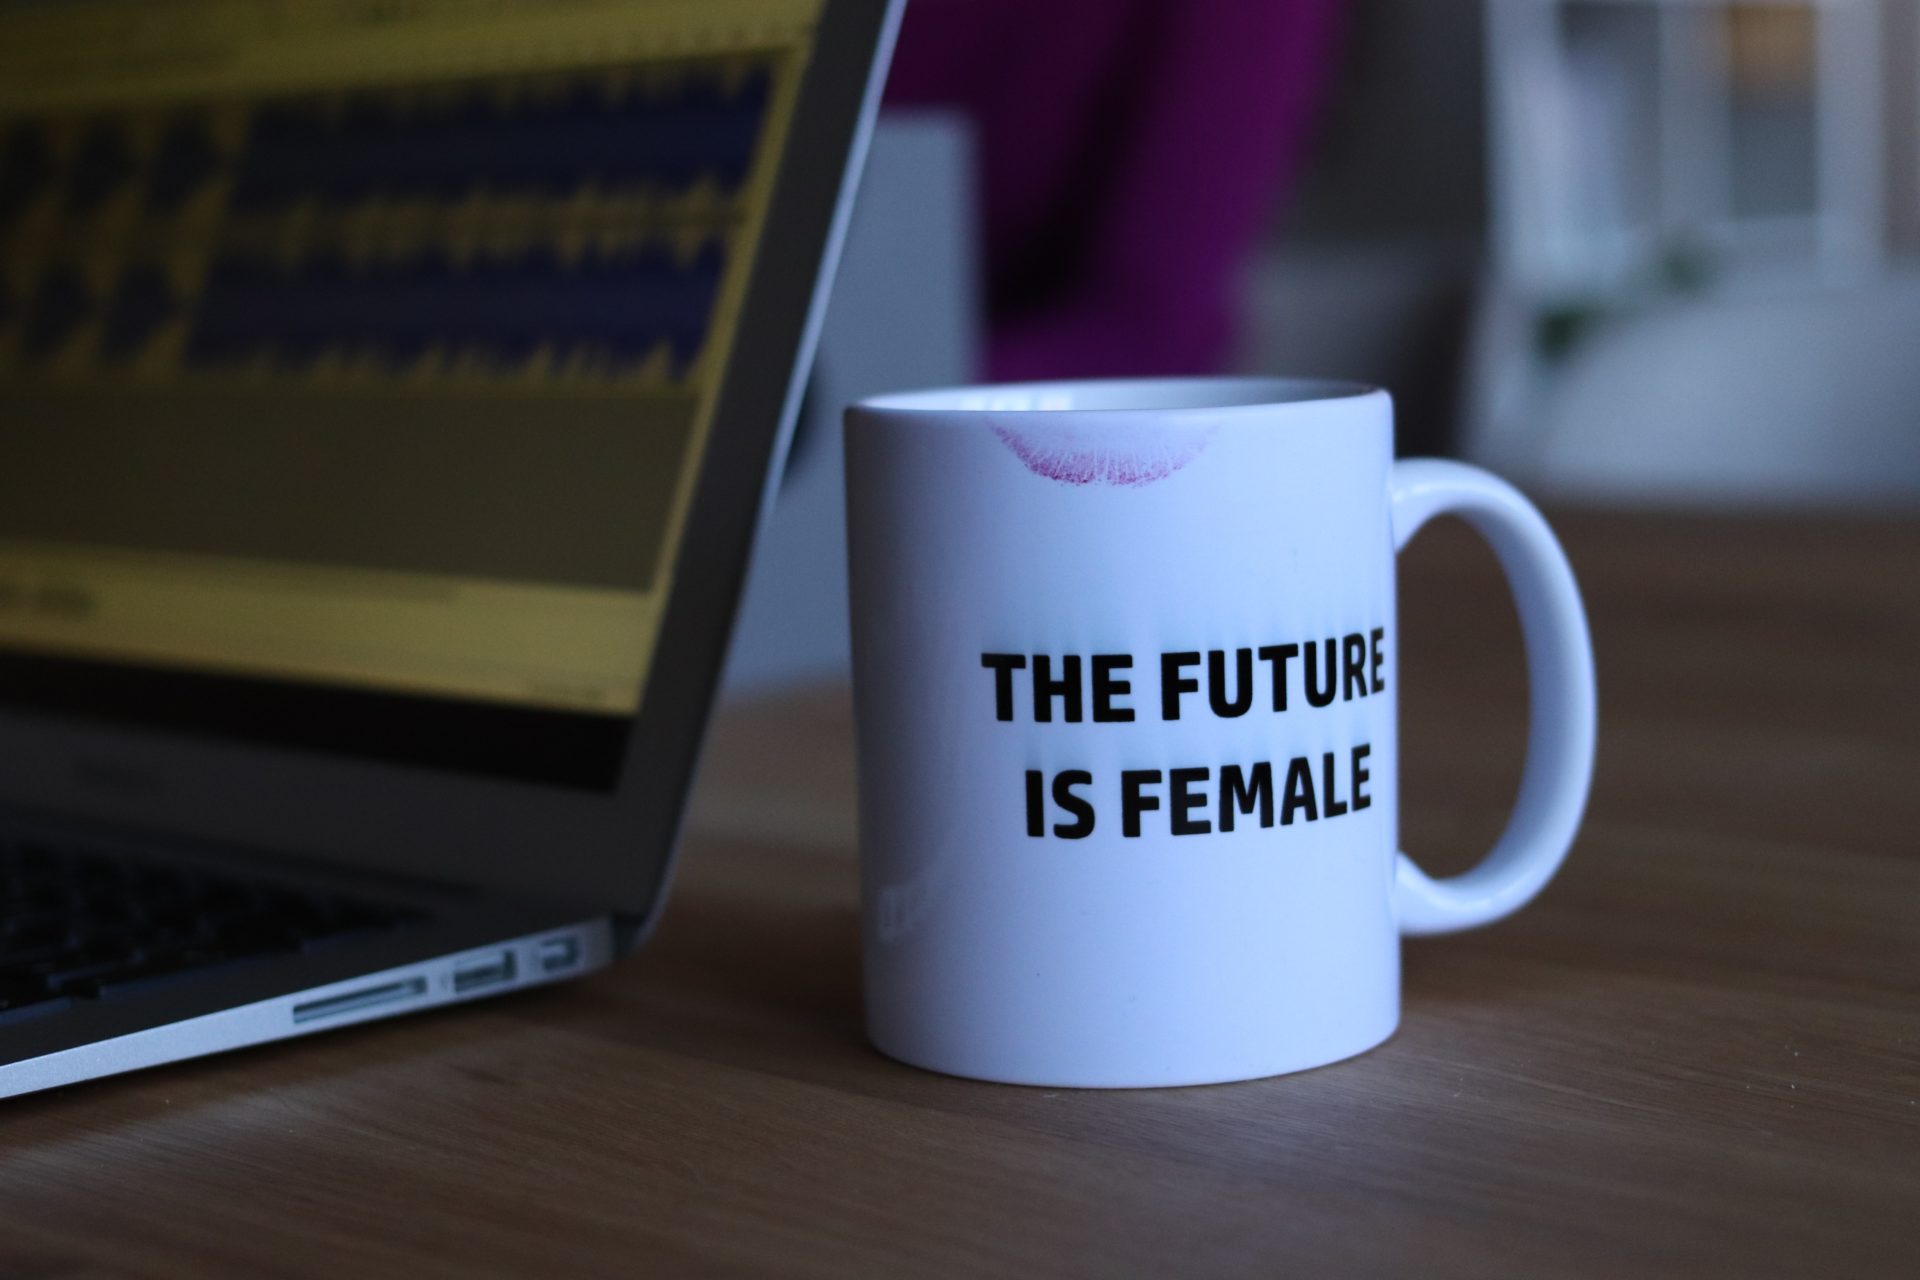 caneca onde se lê "the future is female", representando as mulheres no mercado financeiro